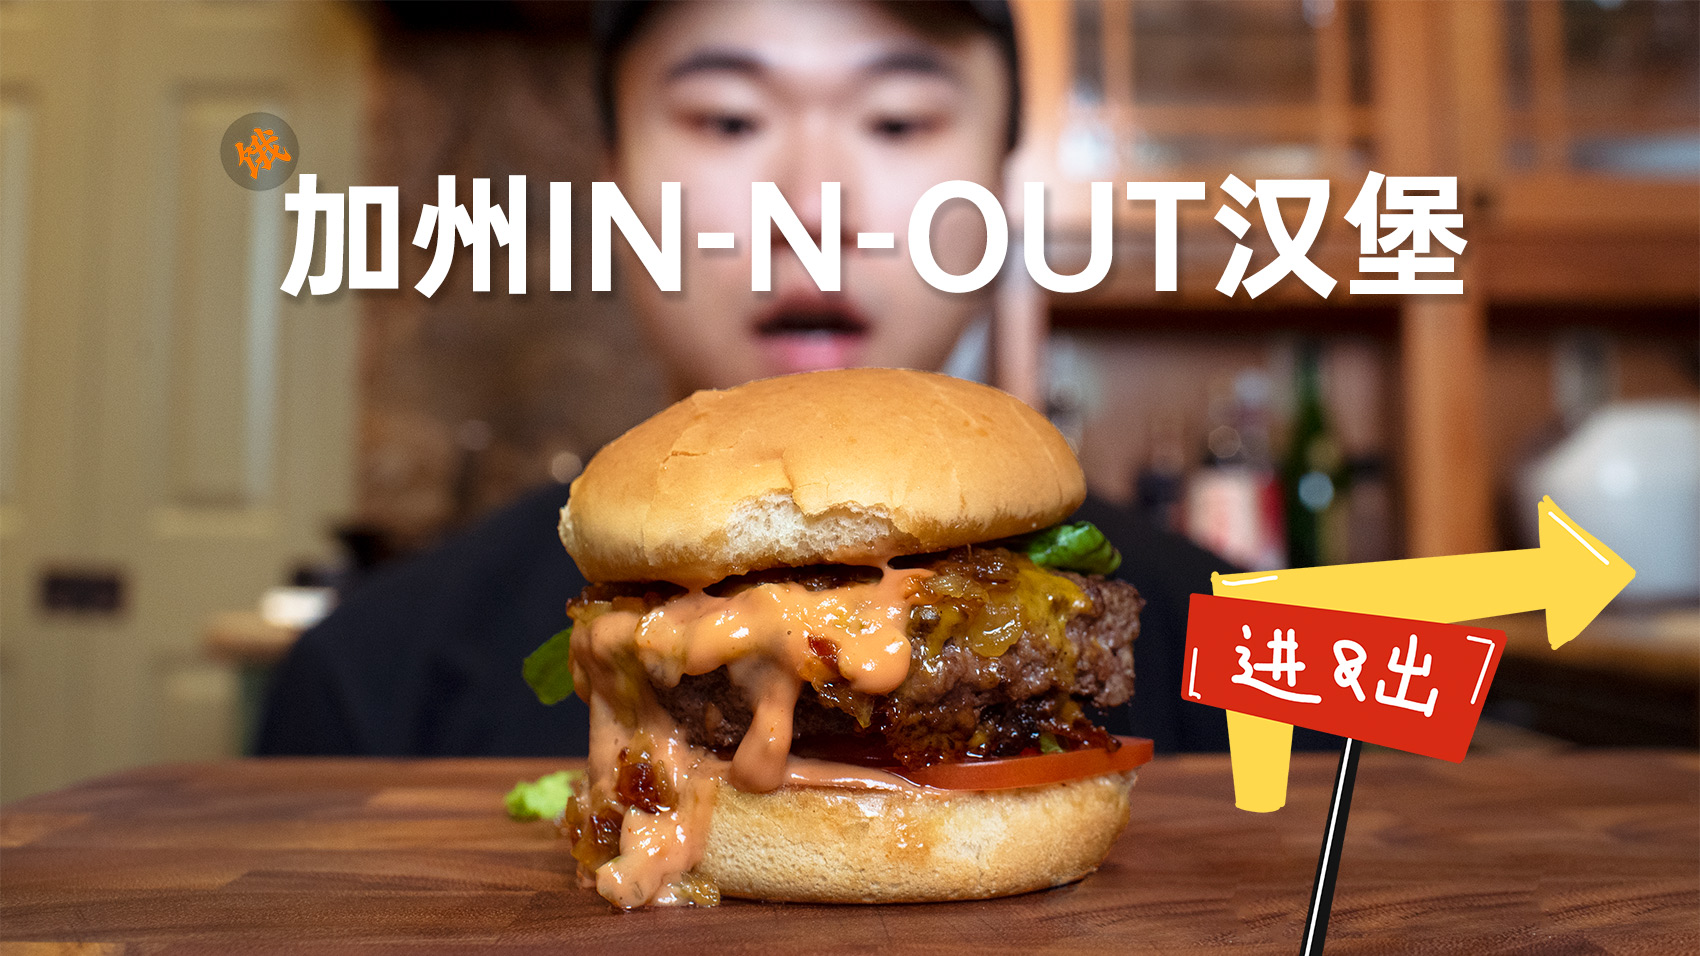 【简单美味】风靡美国加州的In-N-Out汉堡